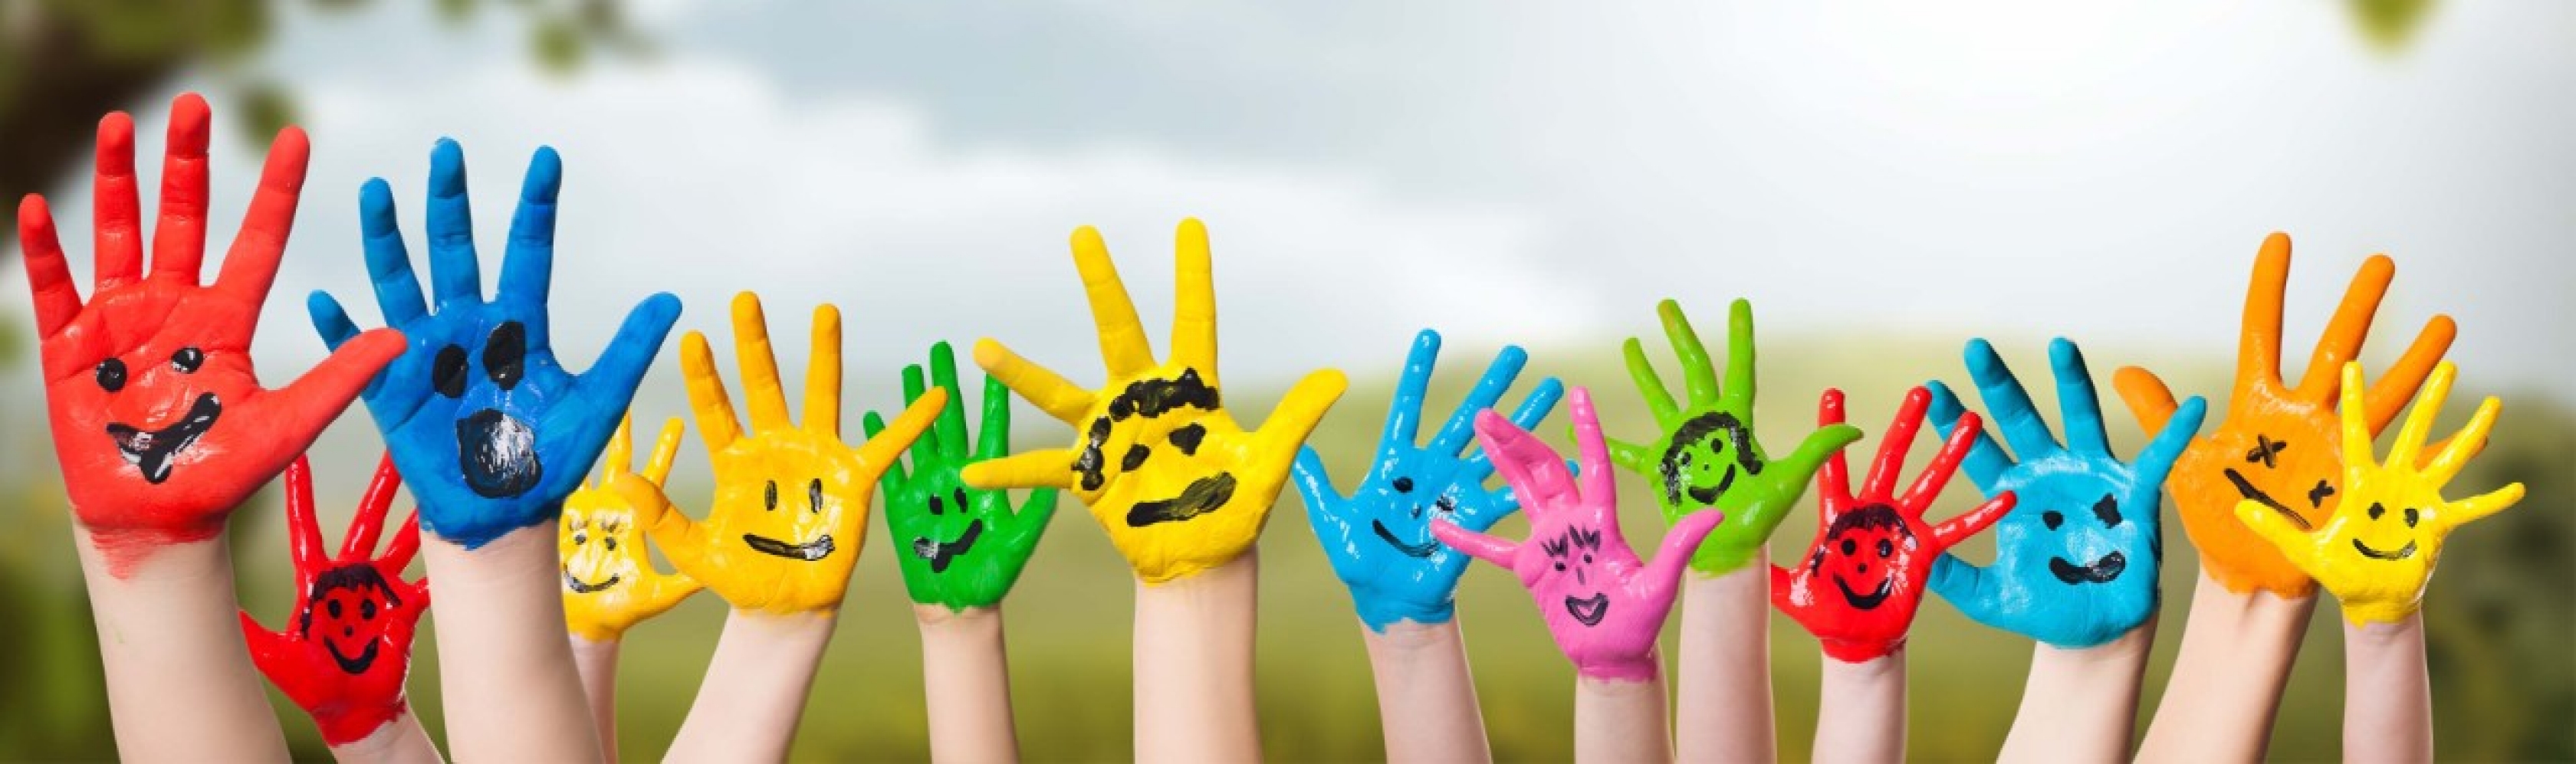 Être solidaire, c’est se mobiliser pour les autres afin de mieux vivre ensemble; cet état d'esprit est symbolisé par les mains colorées d’enfants.